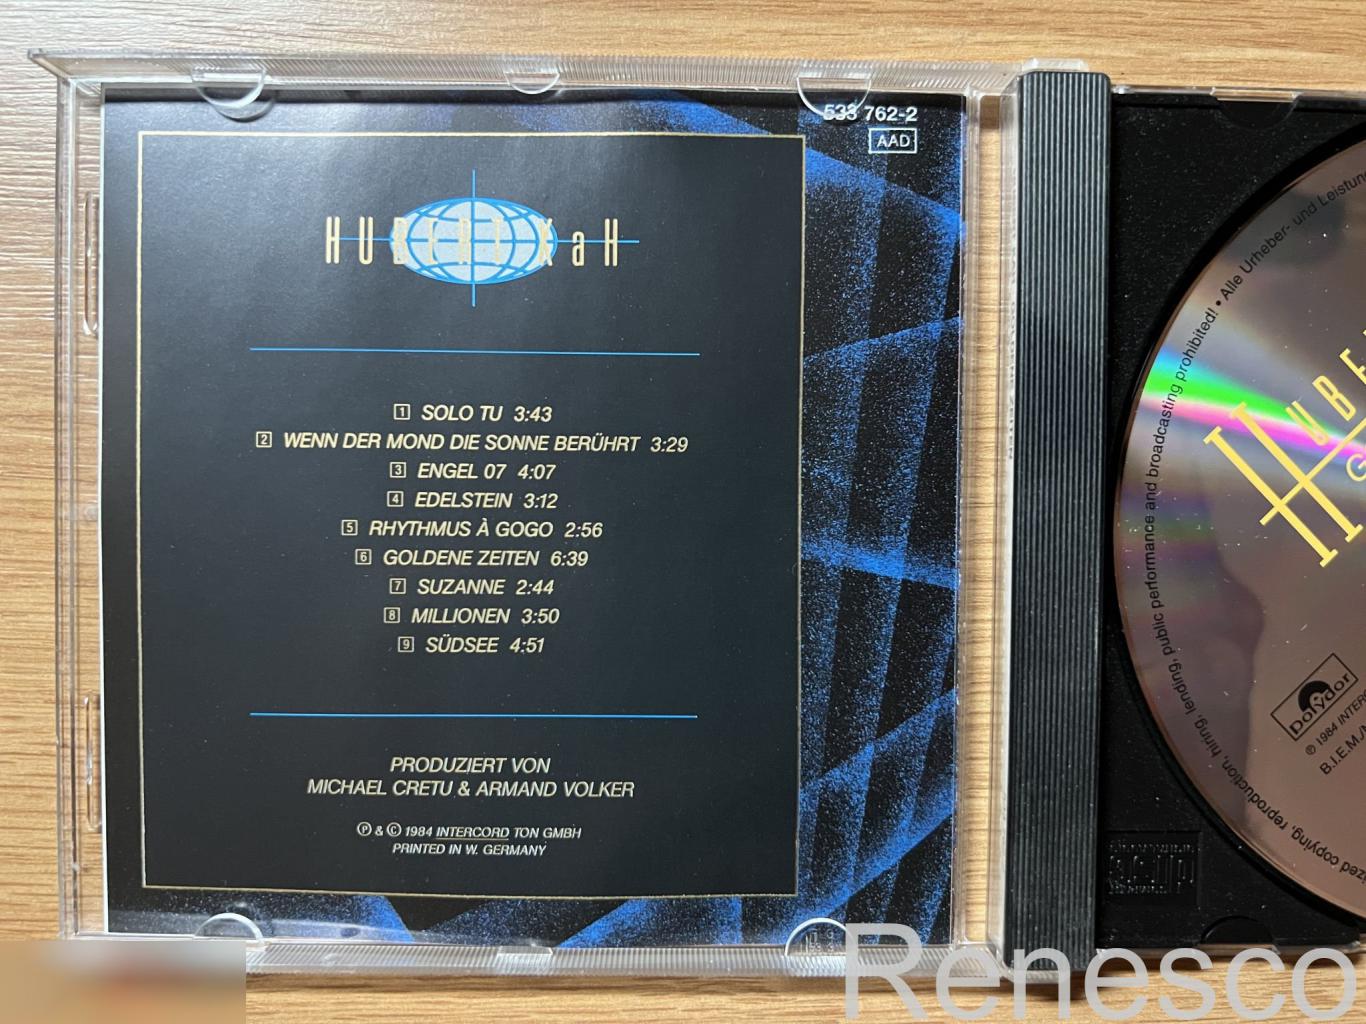 Hubert Kah – Goldene Zeiten (Germany) (1996) (Remastered) (Reissue) 3